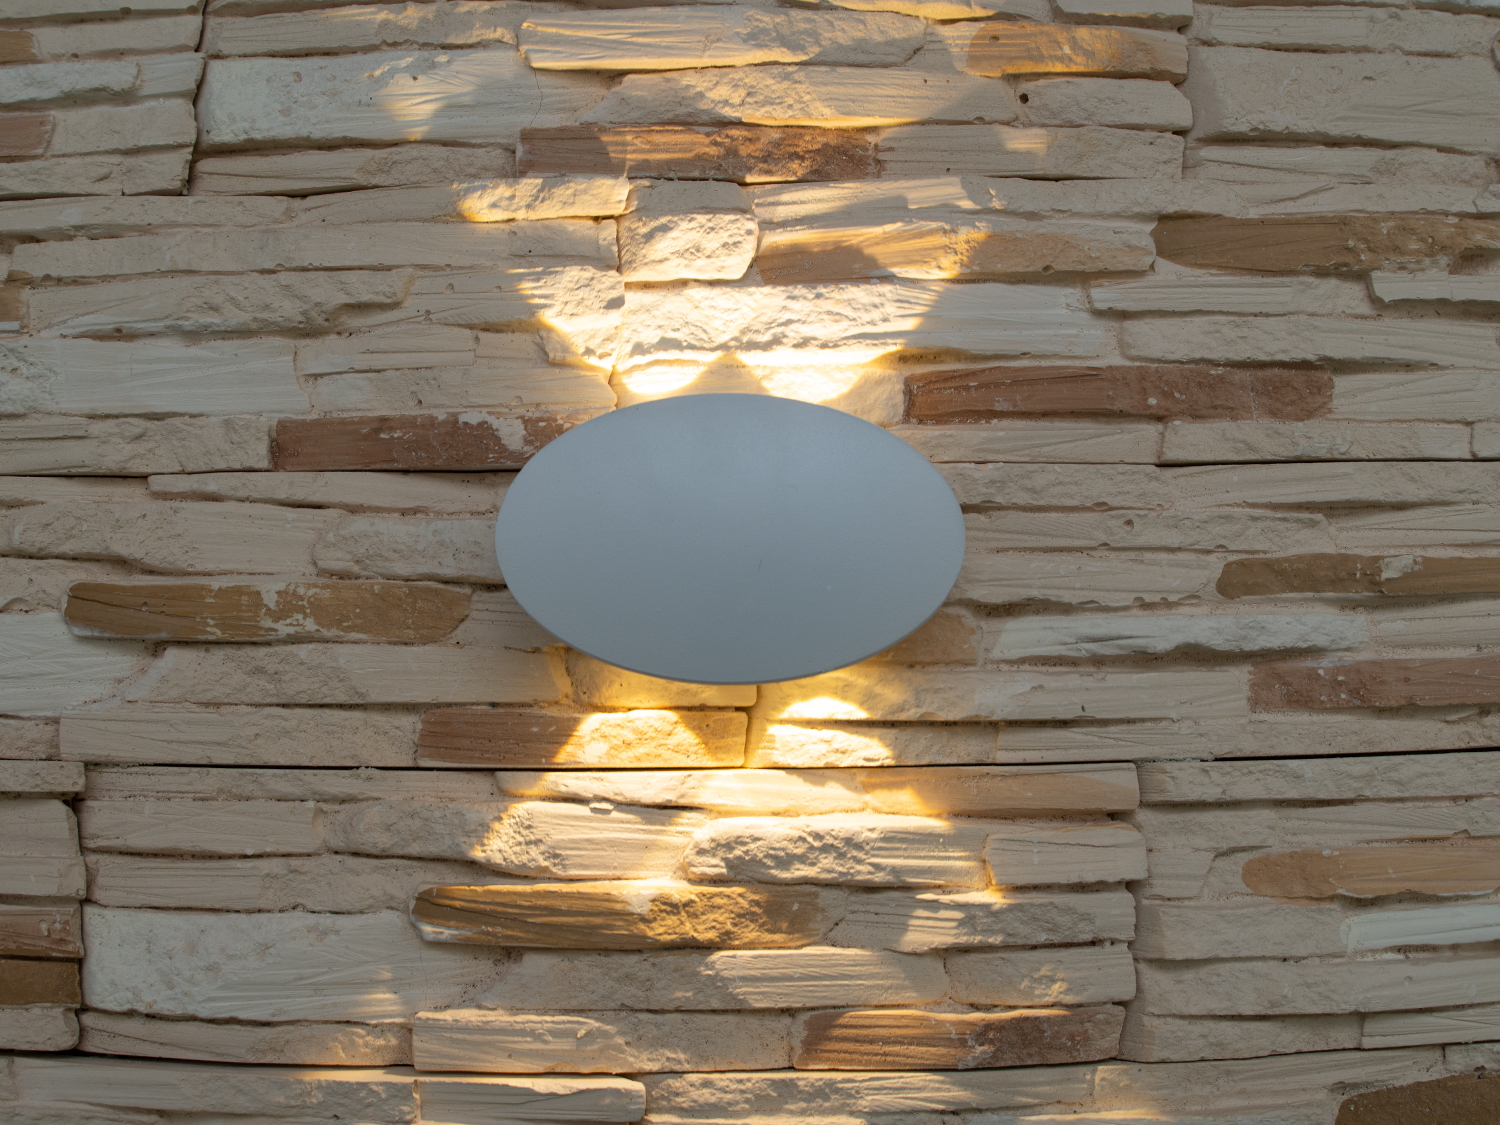 Фасадный светильник обладает малыми размерами и высокой светоотдачей. Угол раскрытия луча 60°.
Не выделяется на фасаде днём, при этом способен полностью изменить облик здания ночью. В отличии от своих предшественников светодиодные светильники для архитектурной подсветки практически не выступают от стены, а значит свет практически полностью распространяется в плоскости стены. Не попадает на оконные откосы, и соответственно, не приводит к световому загрязнению помещений внутри здания как обычные уличные фонари.
Пространство перед светильником мягко освещается светом отраженным от поверхности стены. Такие светильники не создают дискомфорта для глаз в тёмное время суток.
Также может быть использован в помещении. В современном интерьере такой светильник создаст непринужденное боковое освещение, и станет стильной заменой обычных бра.